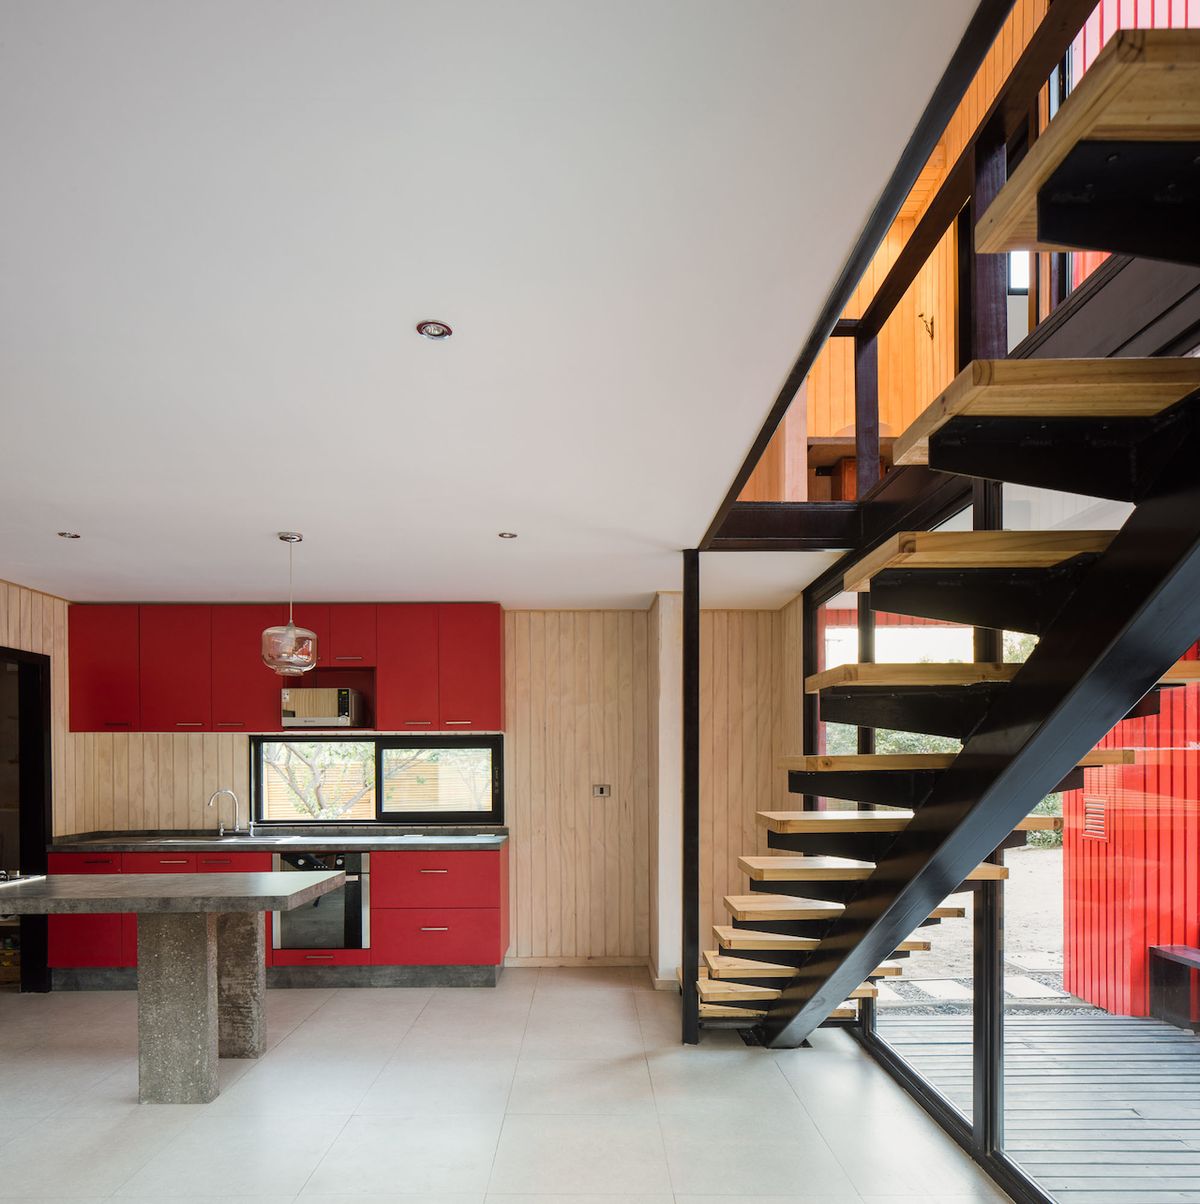 Zatímco dřevěné obklady z fasády se objevují v interiéru domu v přírodní barvě, linka v kuchyni opakuje barvu červenou.